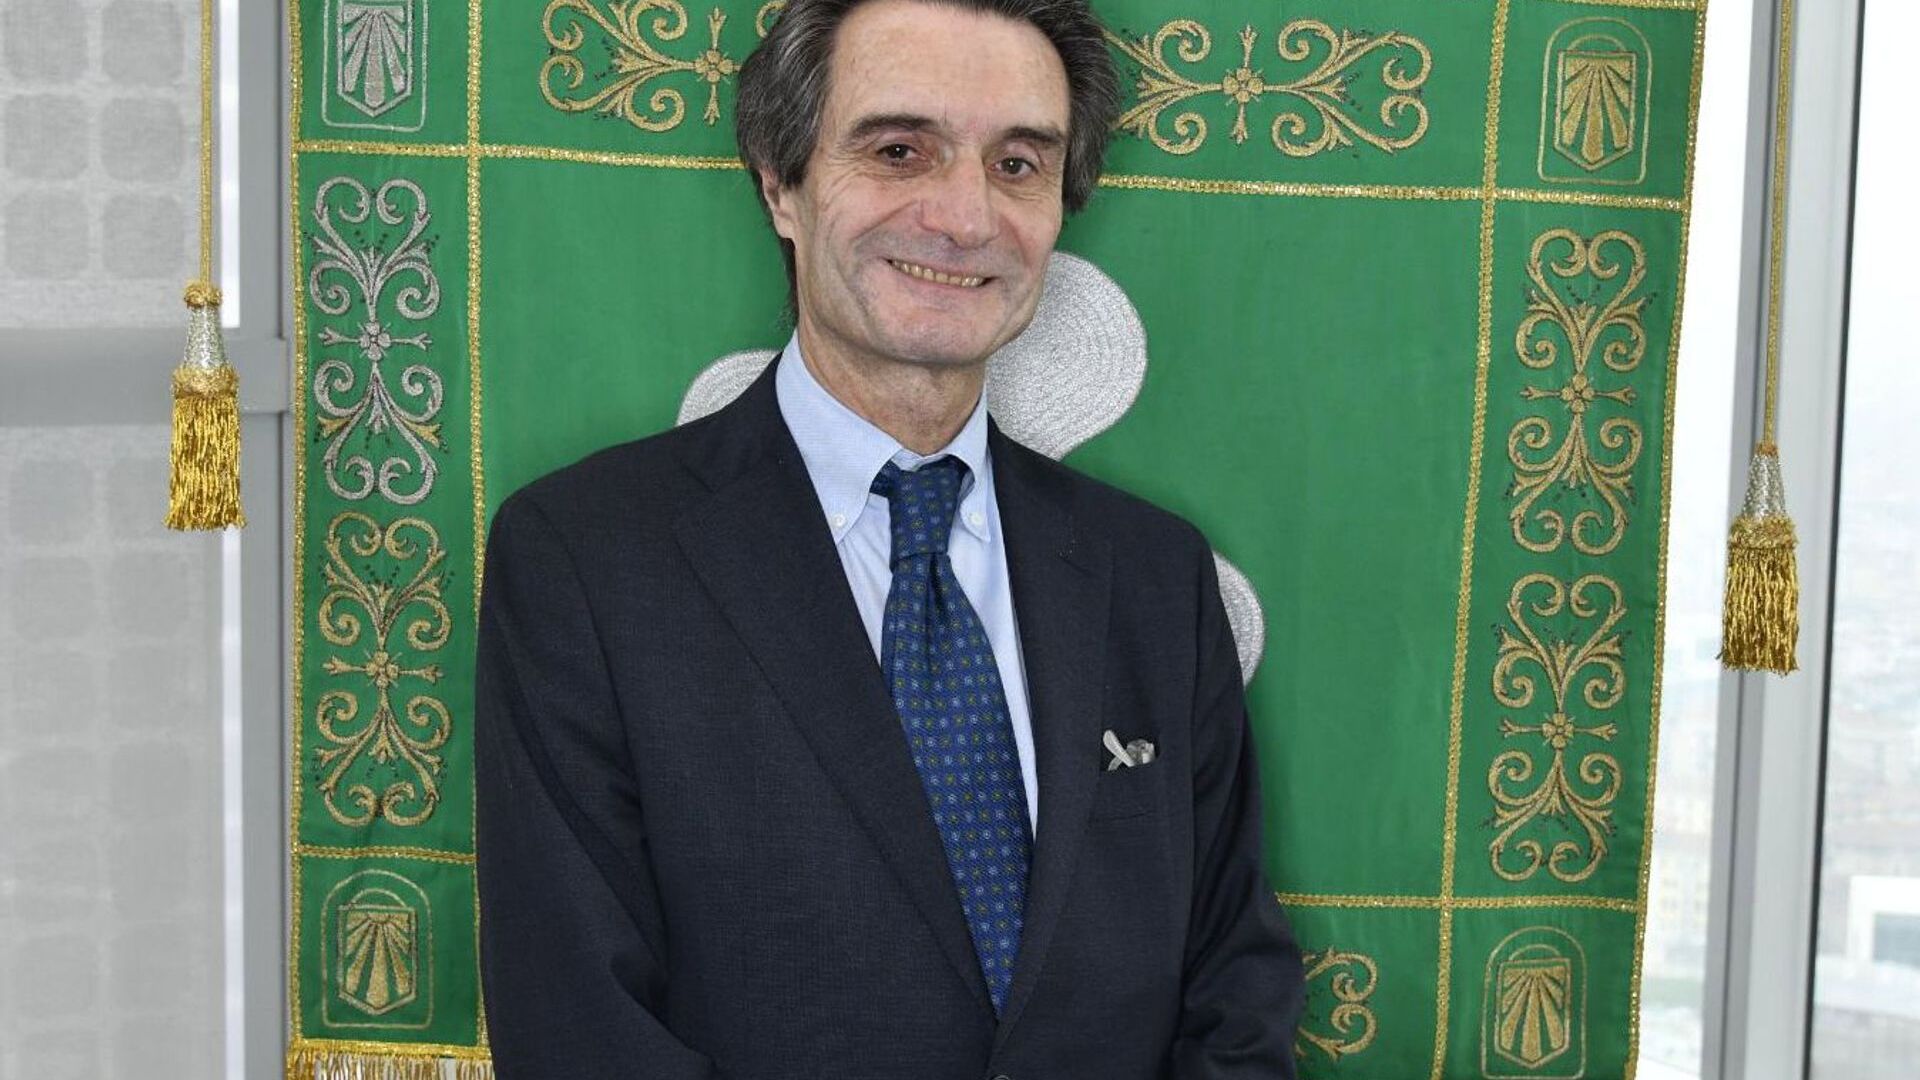 Attilio Fontana és president de la Regió de Llombardia